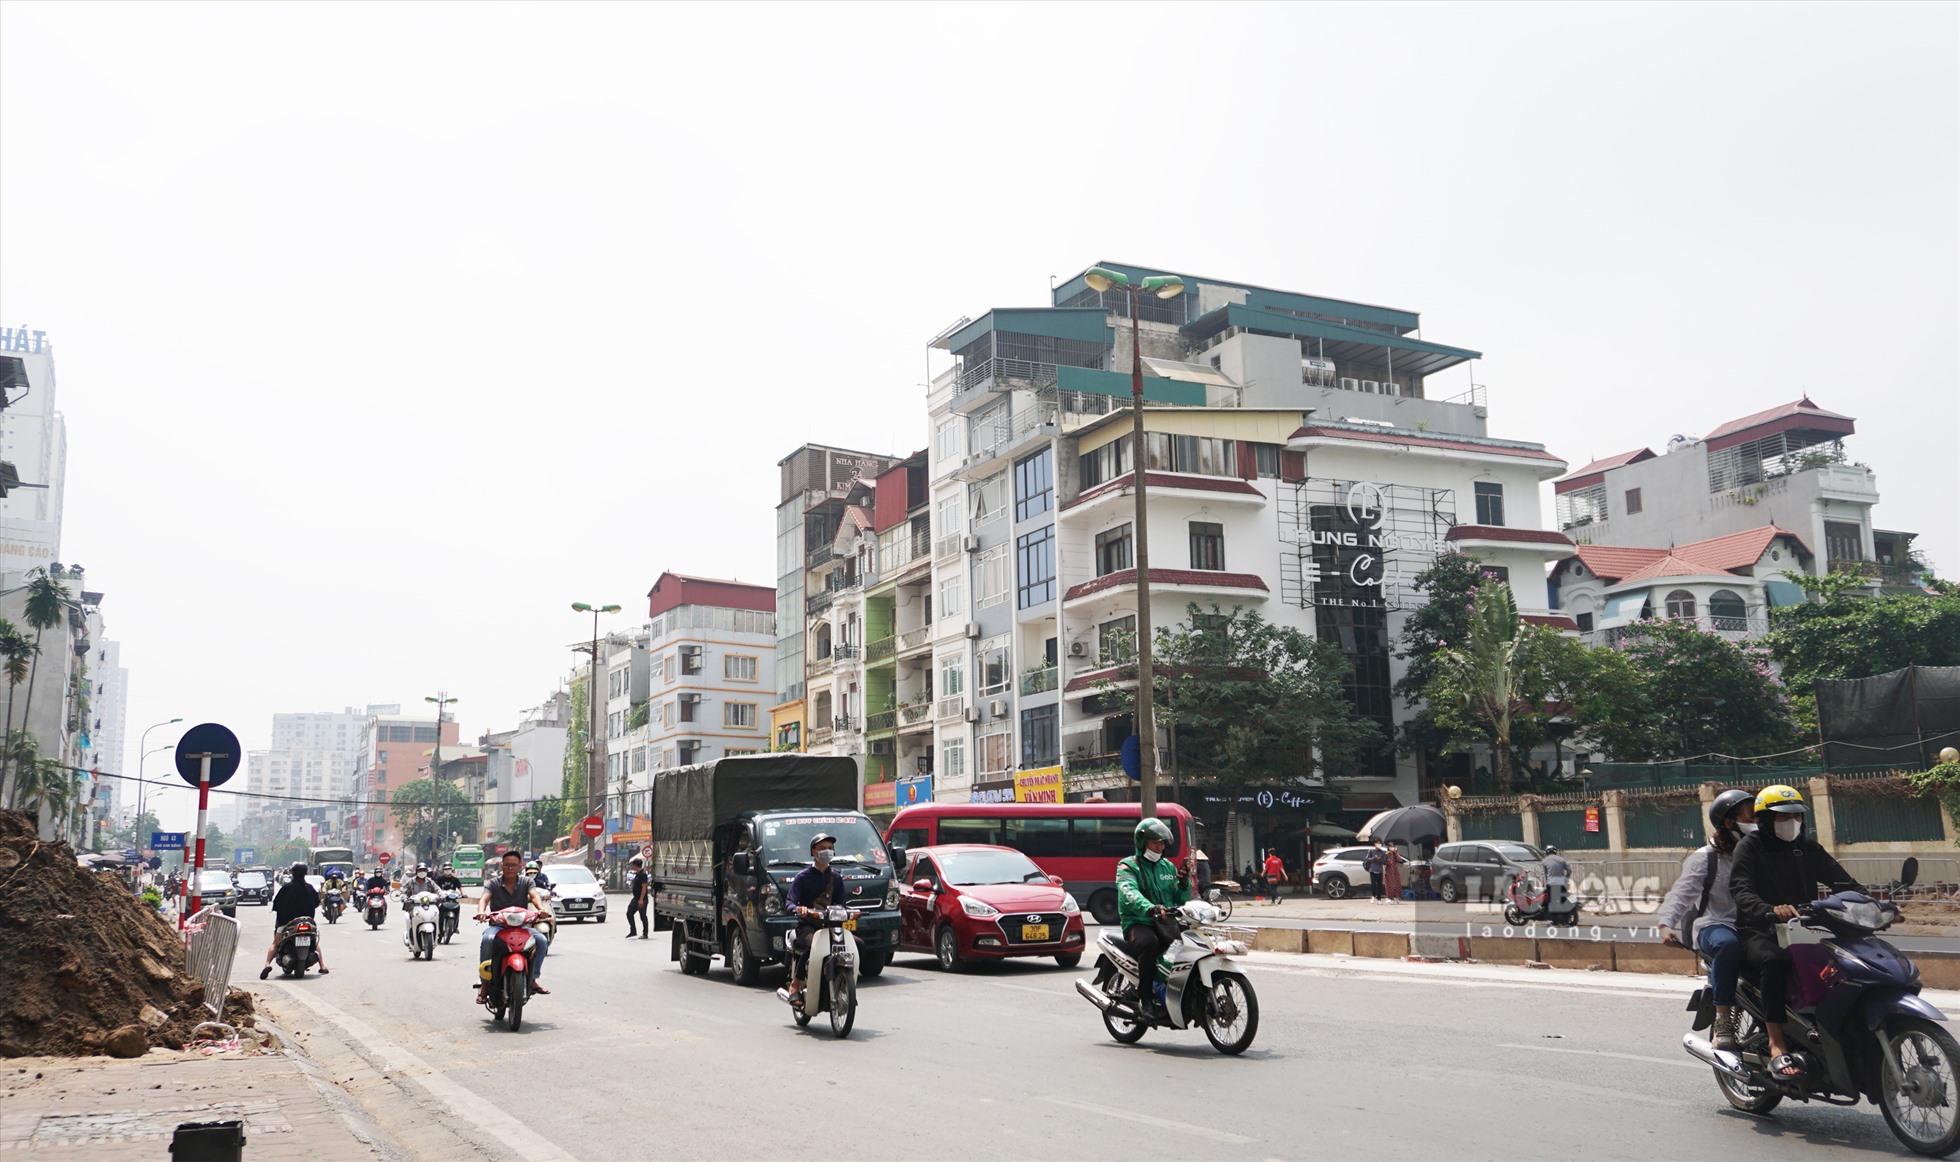 Với thời tiết nắng nóng của Hà Nội, việc di chuyển trên đoạn đường không một bóng cây trở khiến nhiều người cảm thấy mệt mỏi.